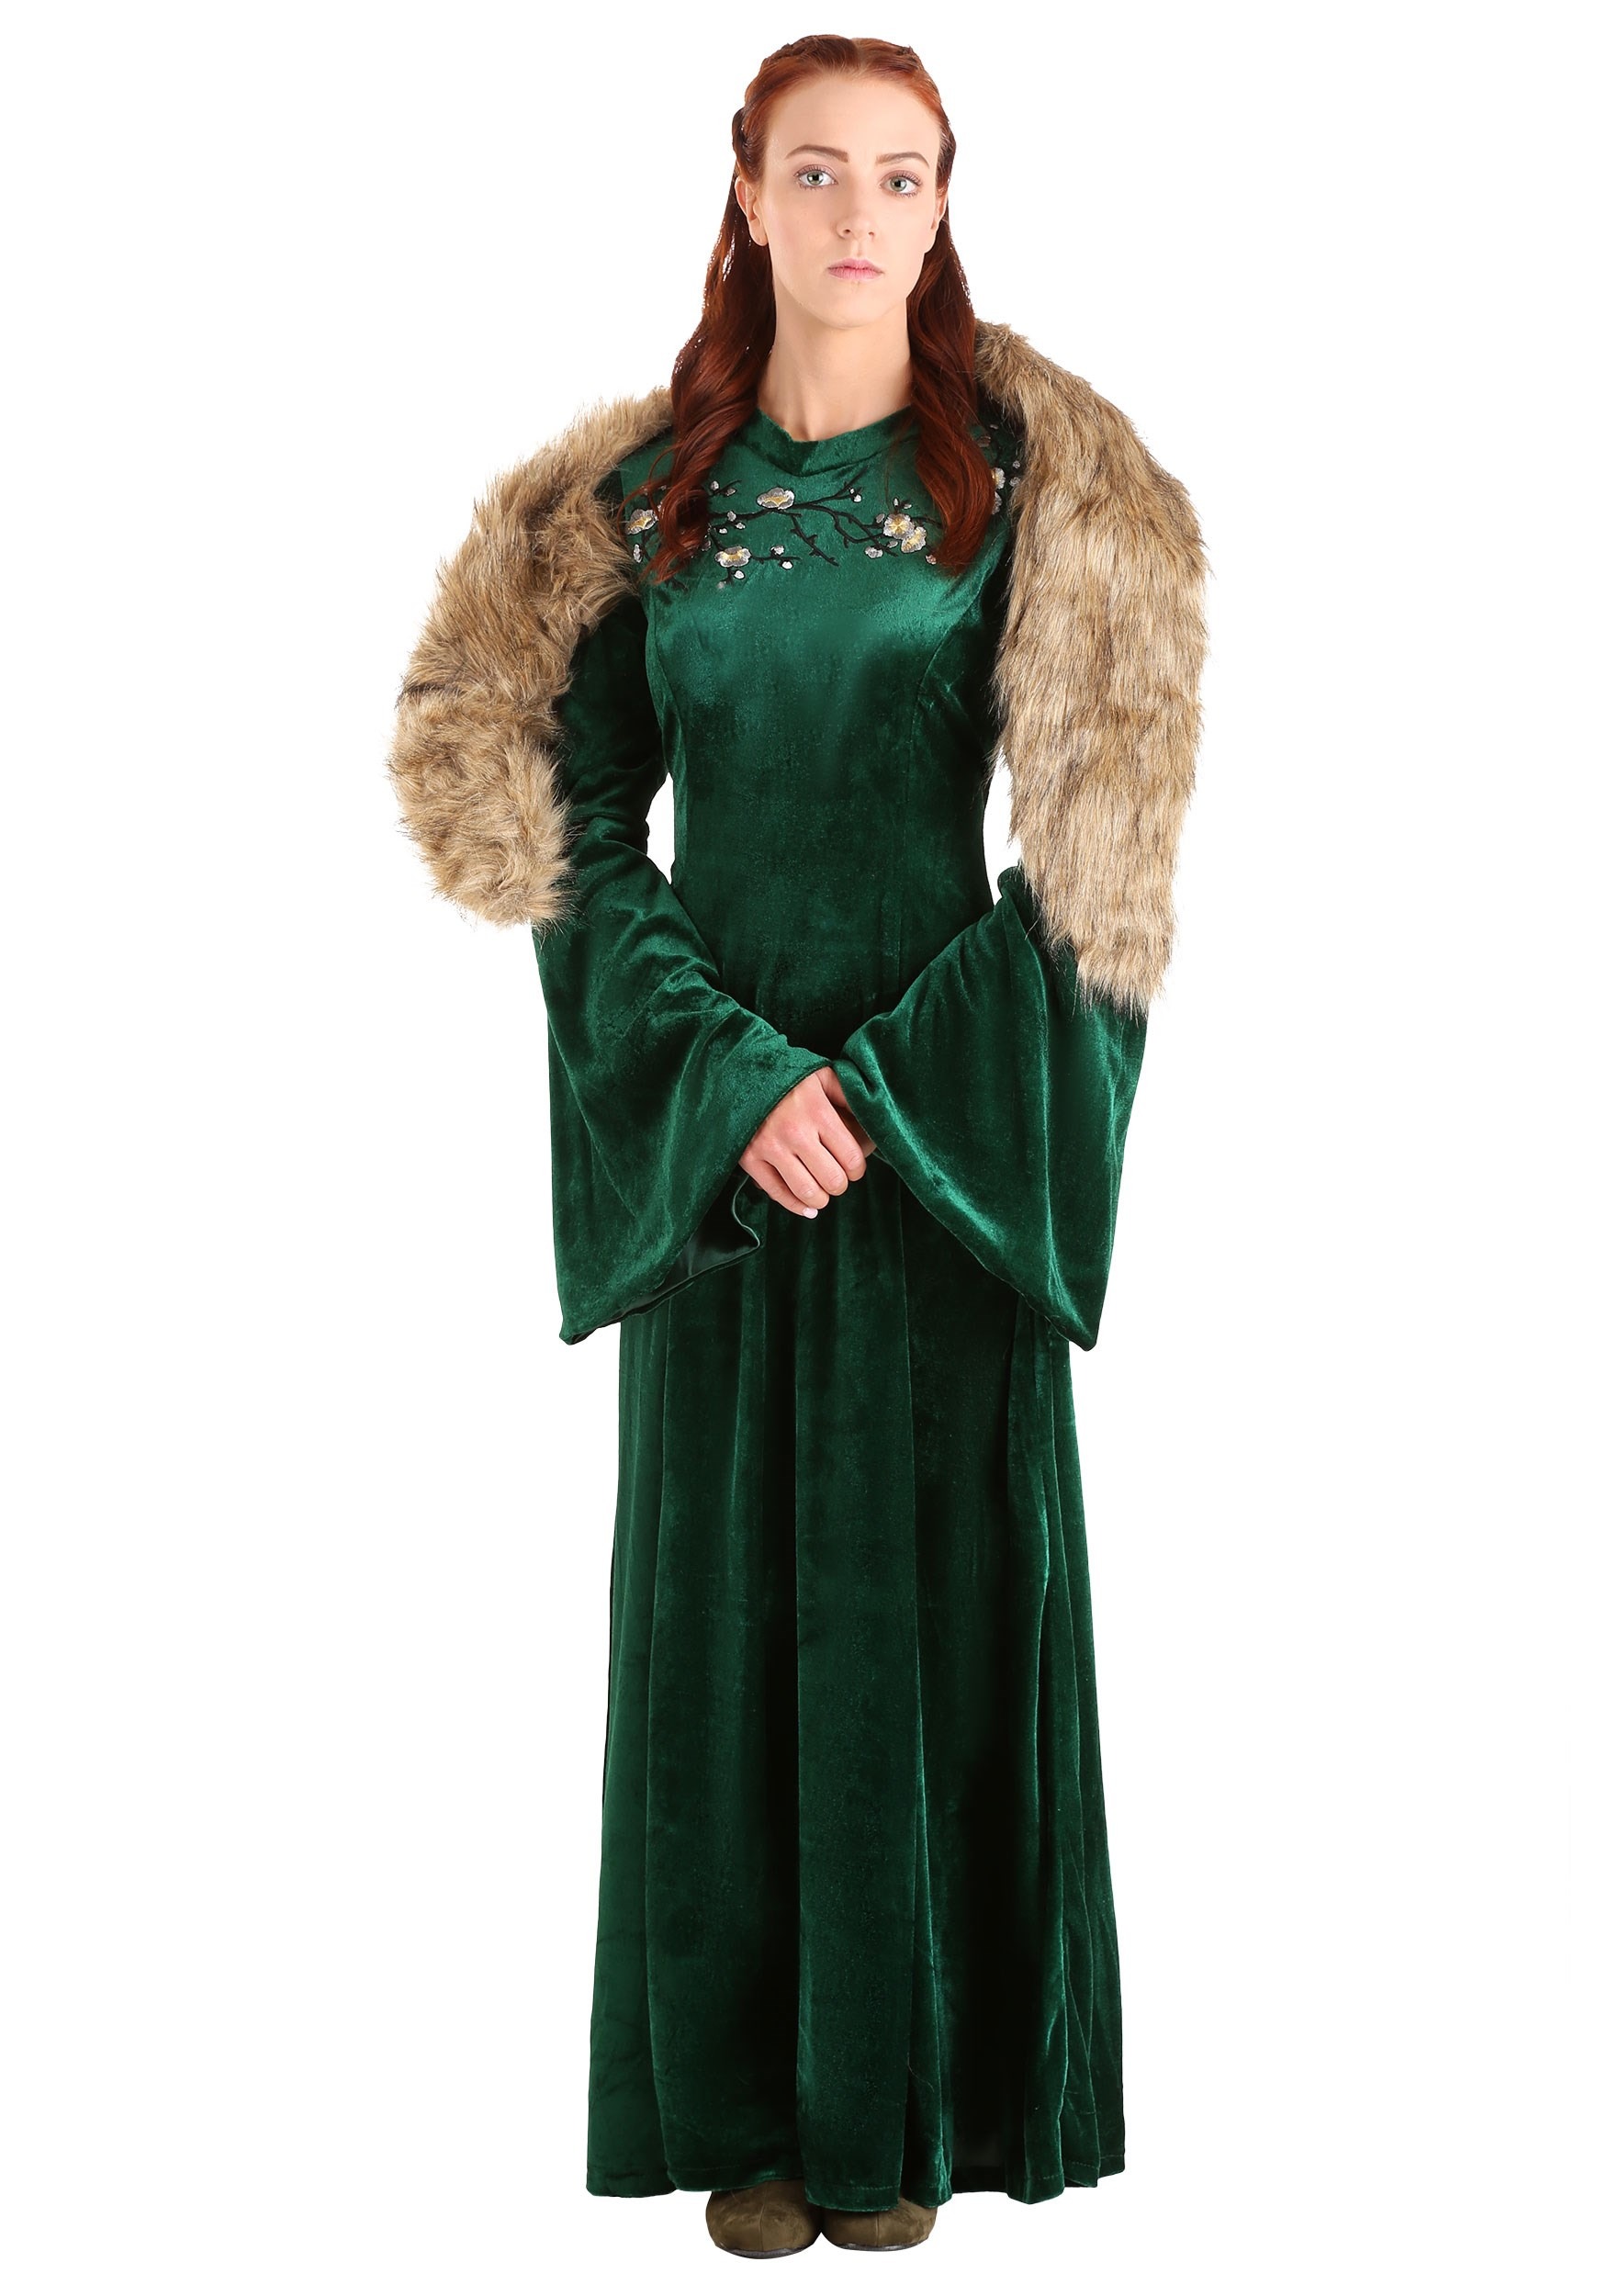 Sansa Stark Halloween Costume